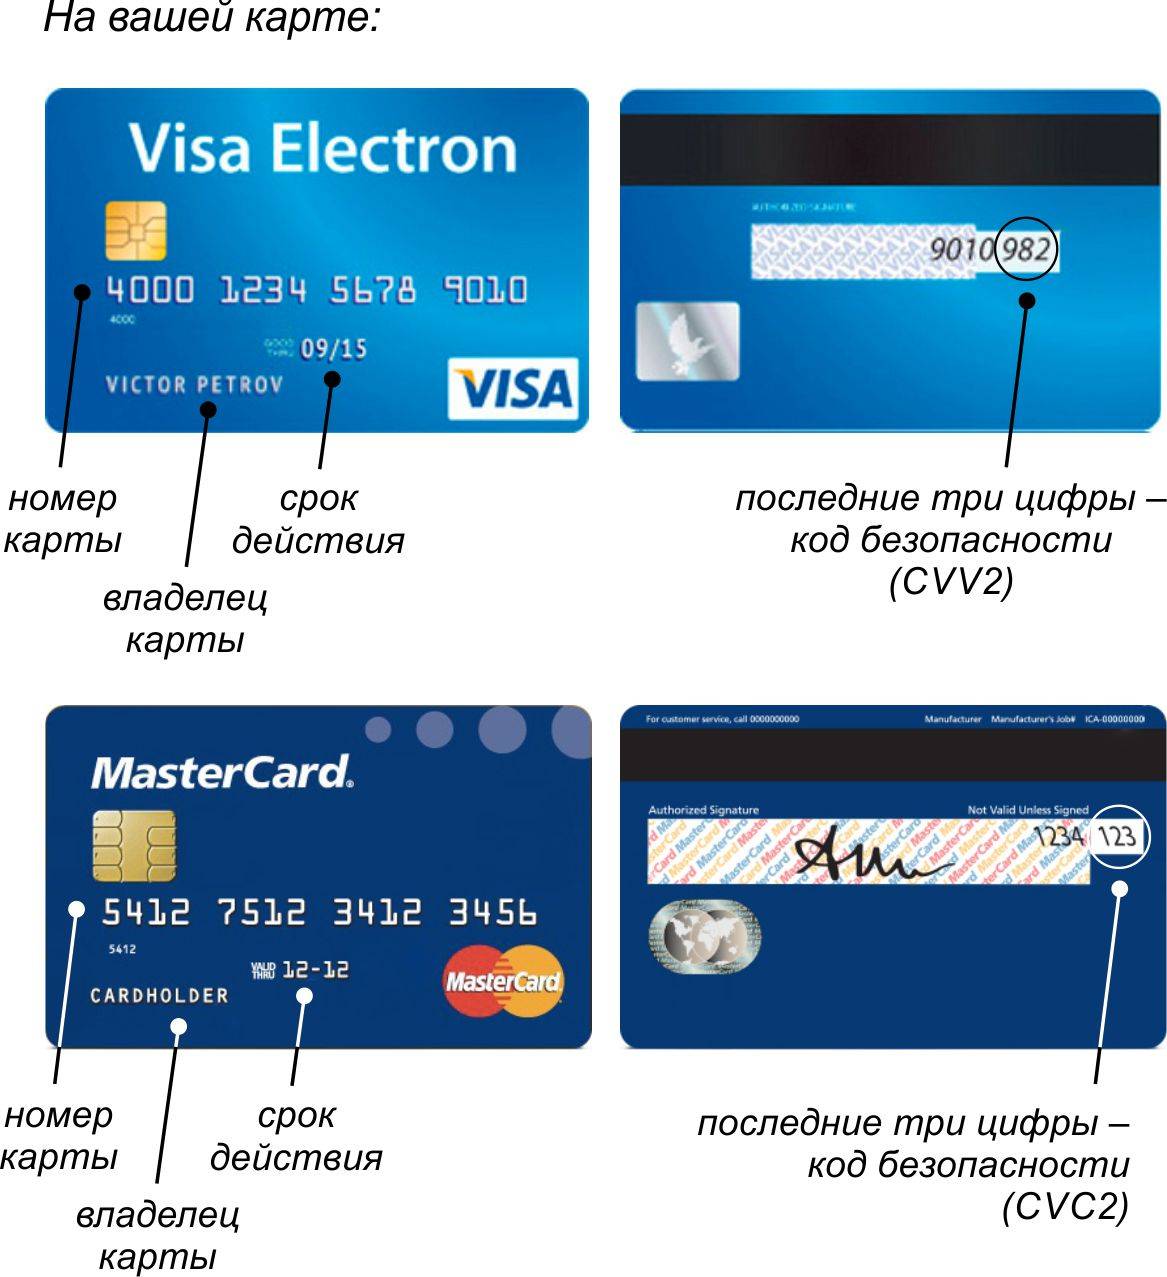 Что такое CVV на банковской карте visa